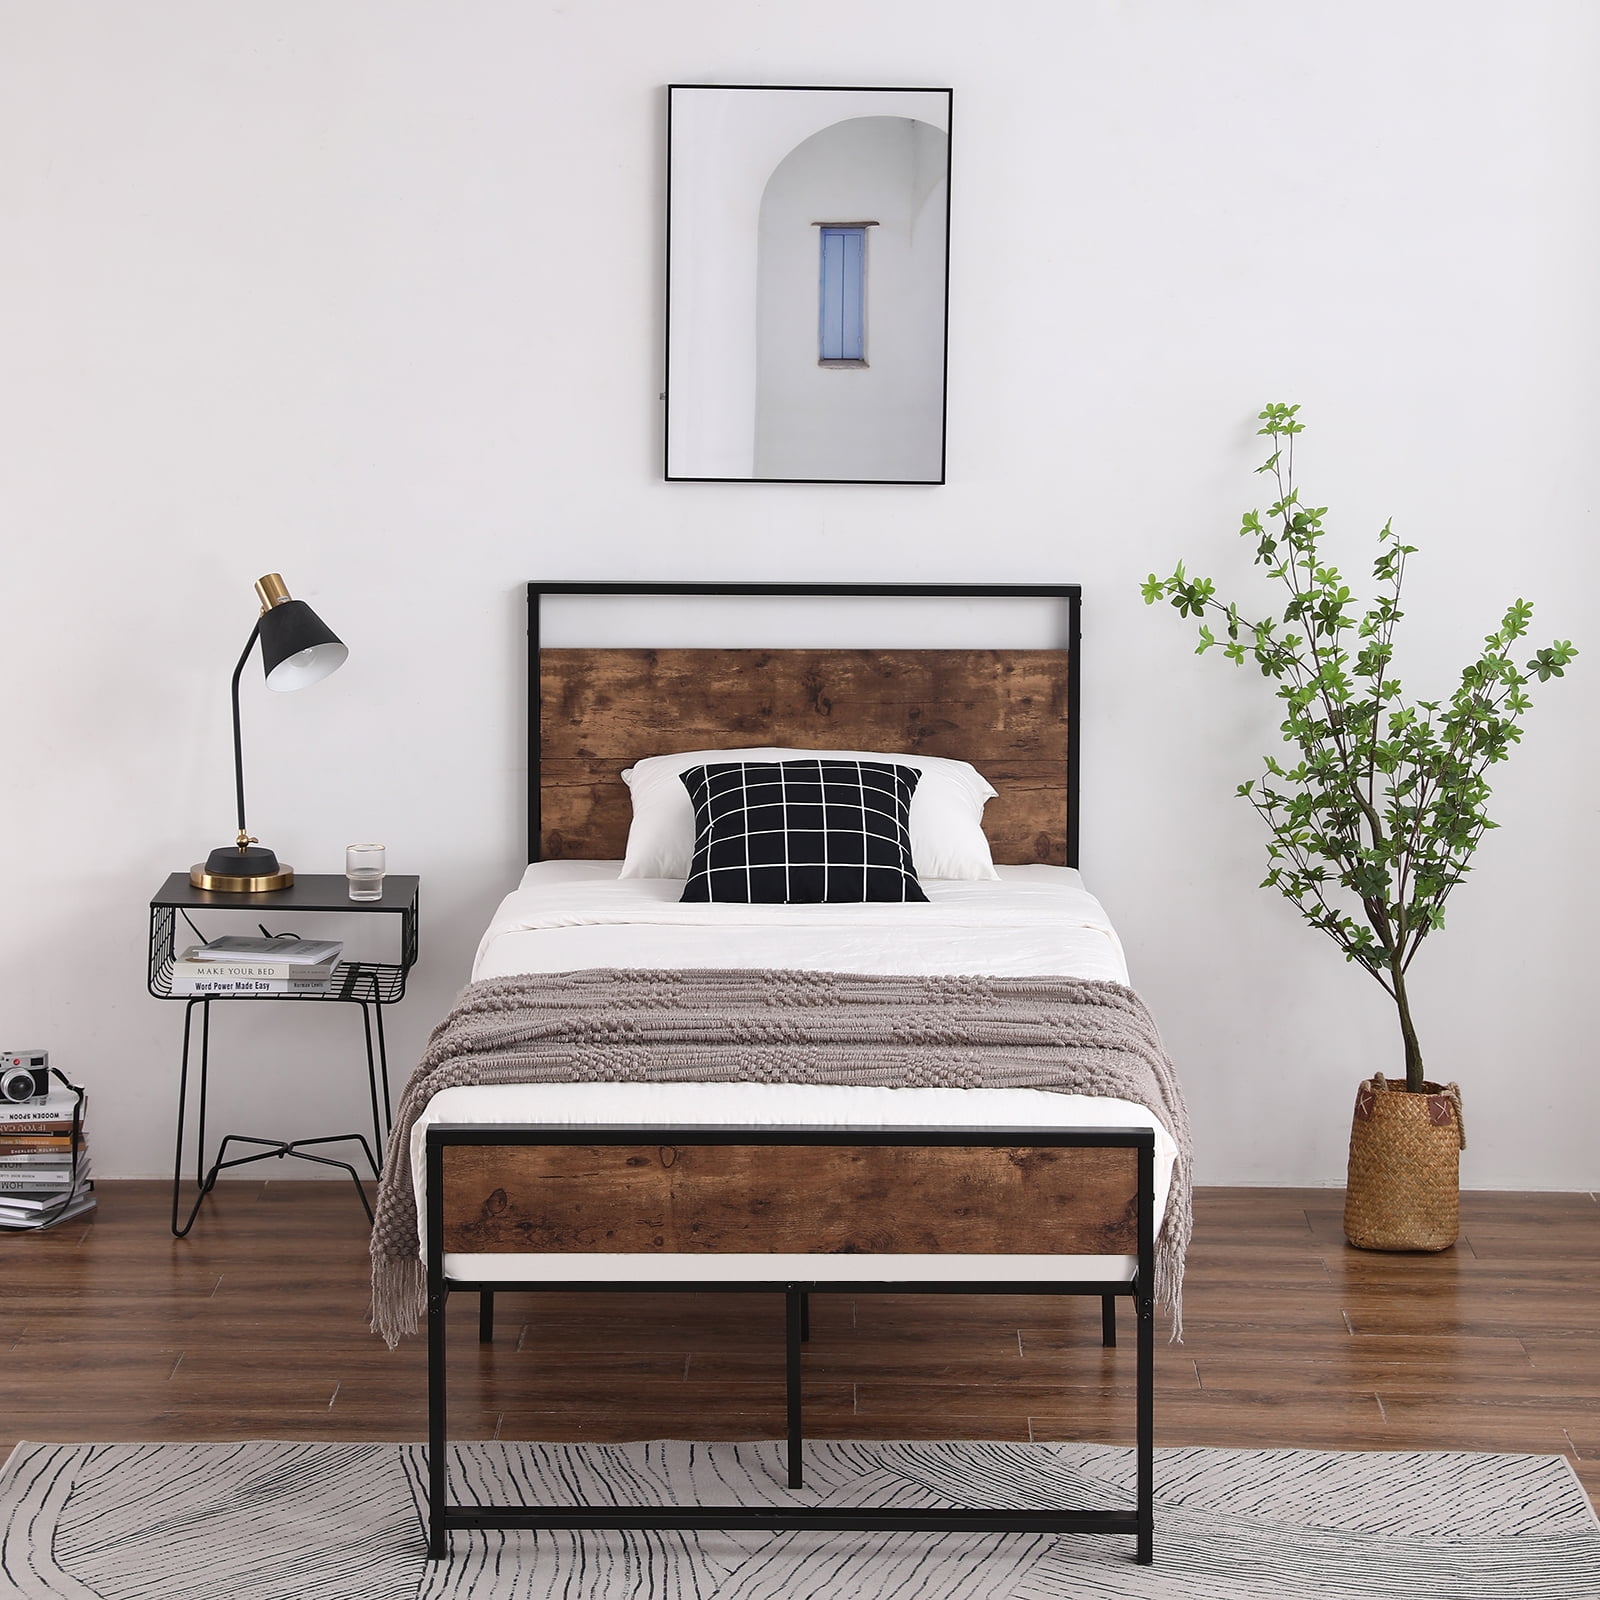 Details about   Bookcase KING Headboard for Platform Bed OR Metal Bed Frame Modern Bedroom Brown 